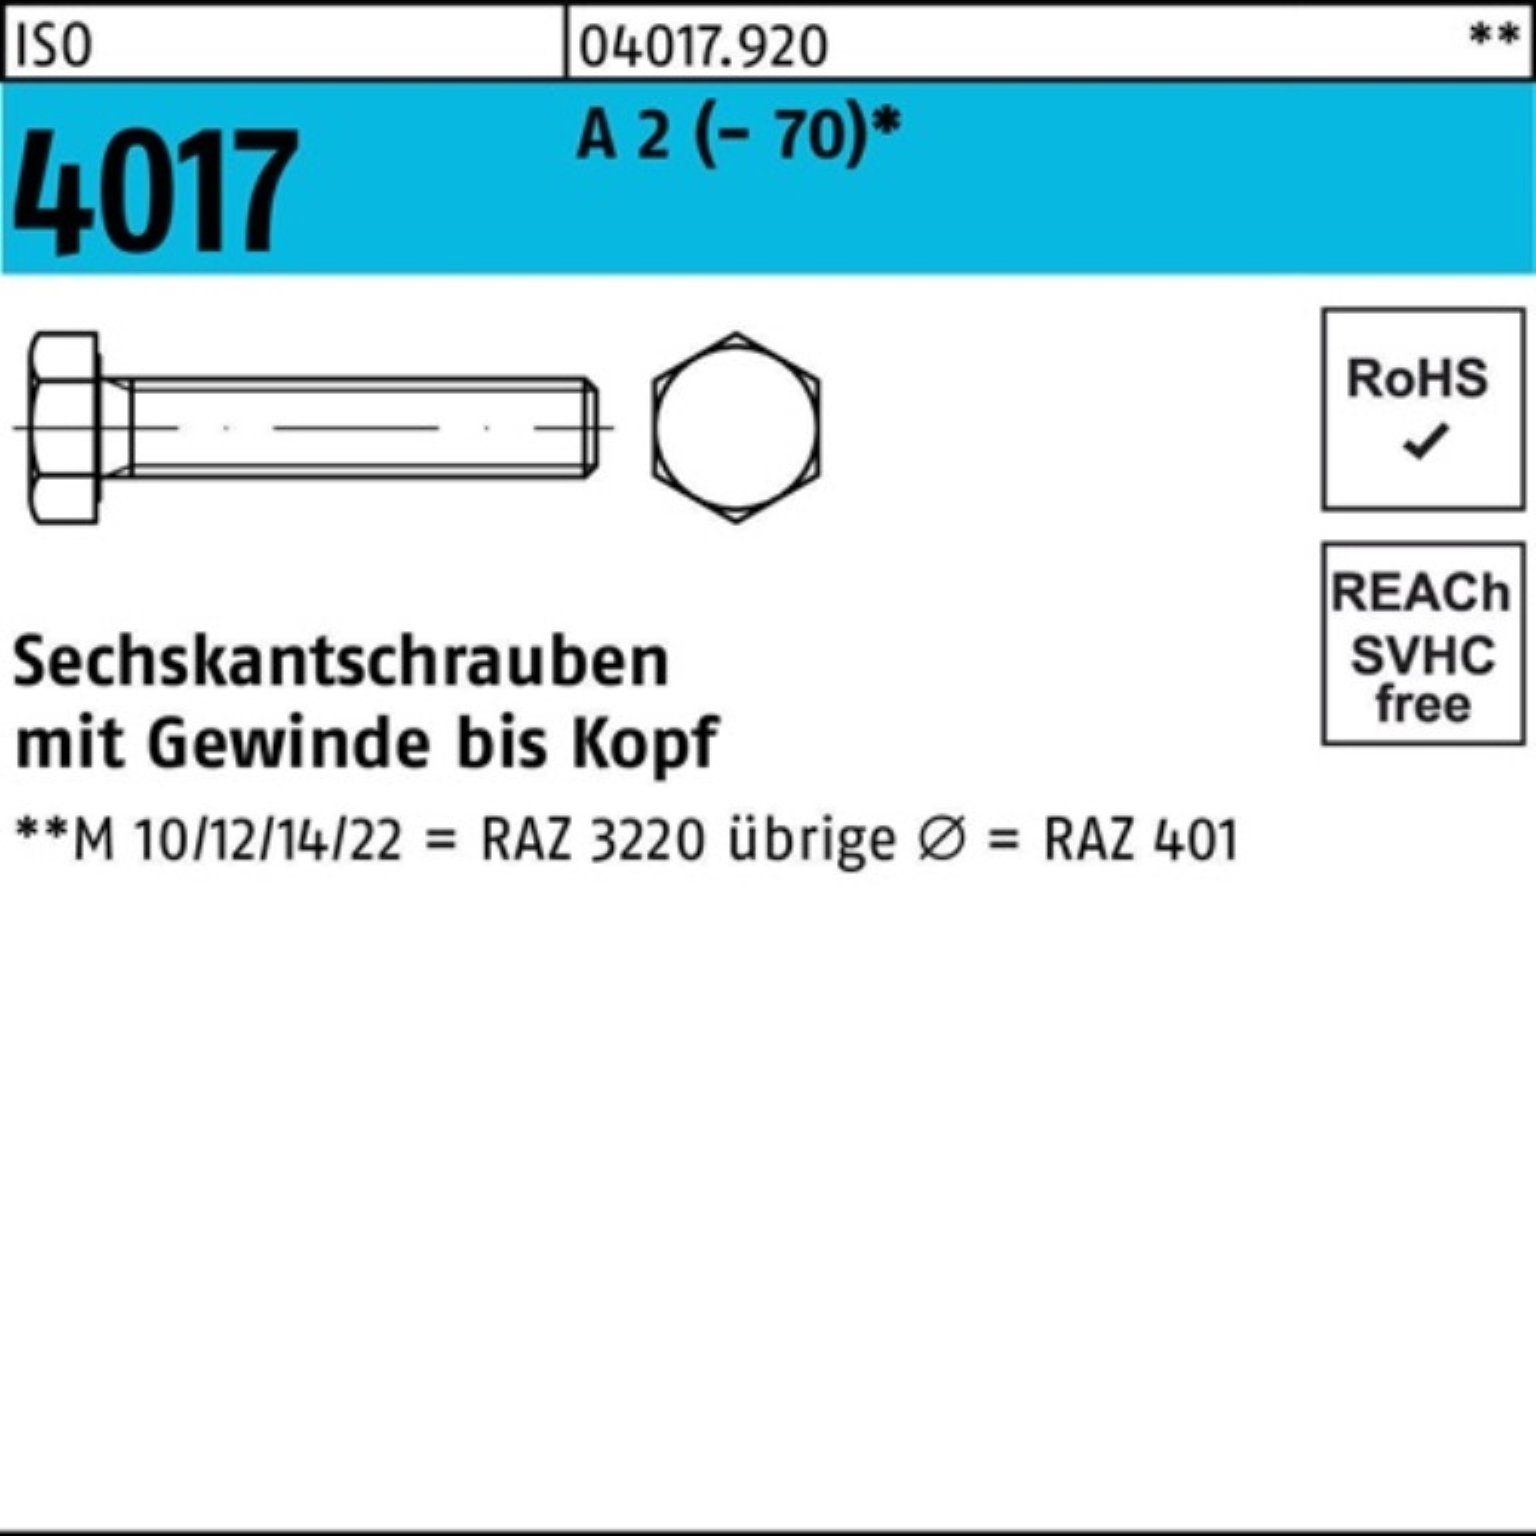 Bufab Sechskantschraube 100er Pack Sechskantschraube ISO 4017 VG M14x 60 A 2 (70) 50 Stück